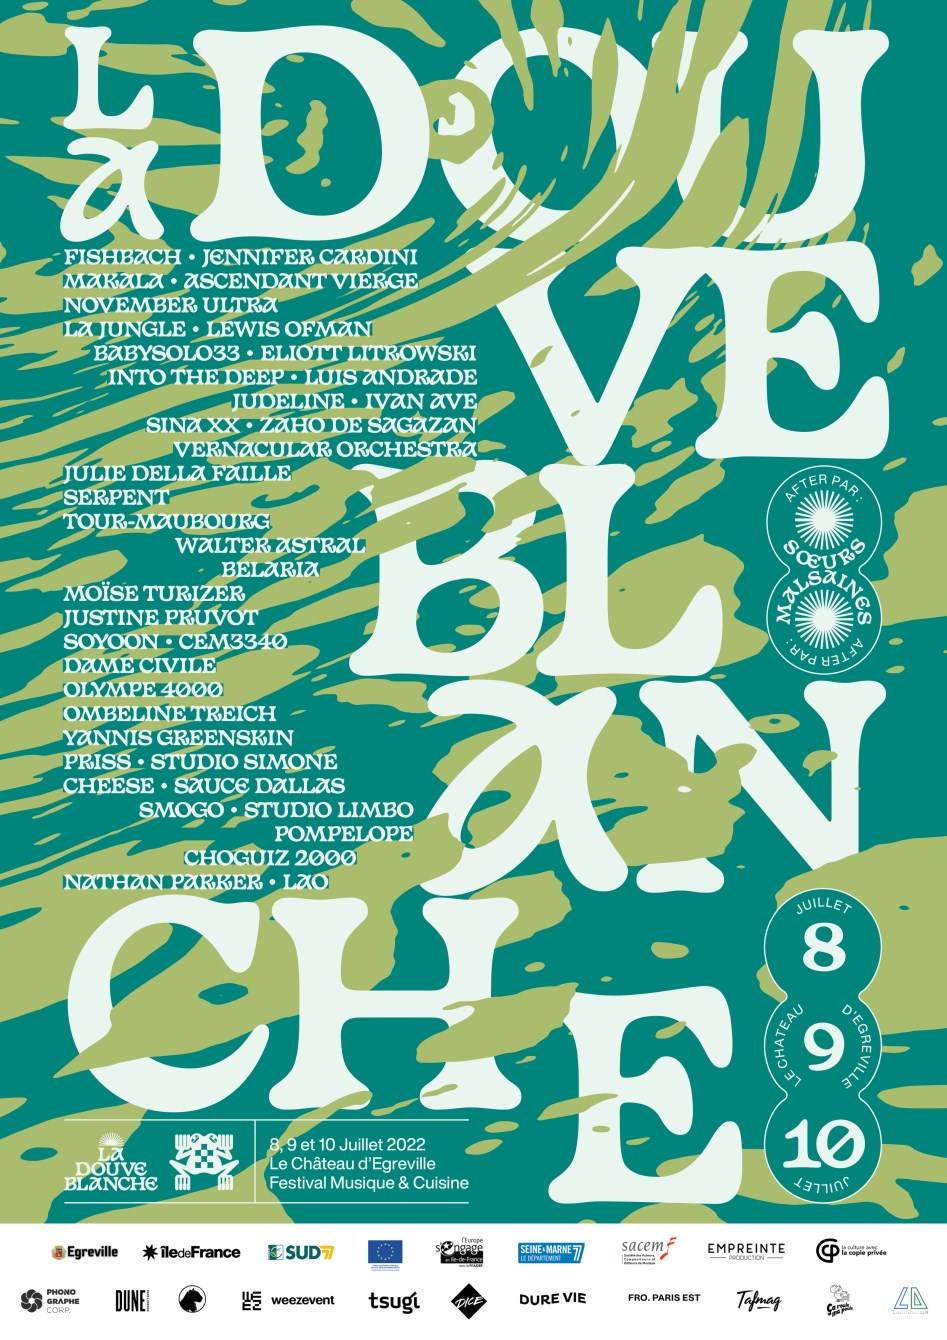 La Douve Blanche Festival 2022 - フライヤー表